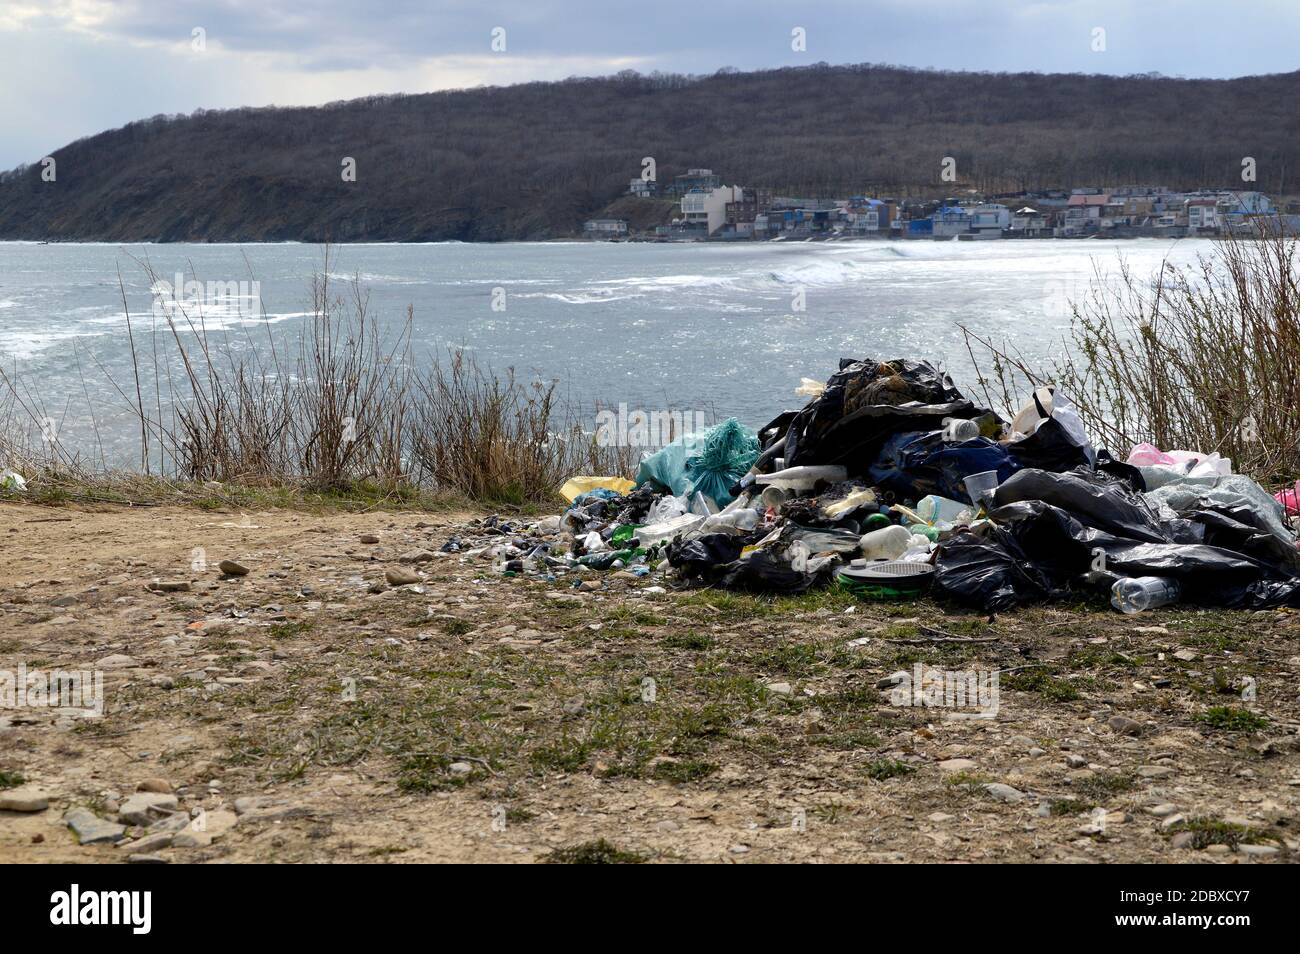 Une pile de déchets laissés sur la rive de la mer de ​​Japan après le repos des gens. Concept de pollution environnementale Banque D'Images